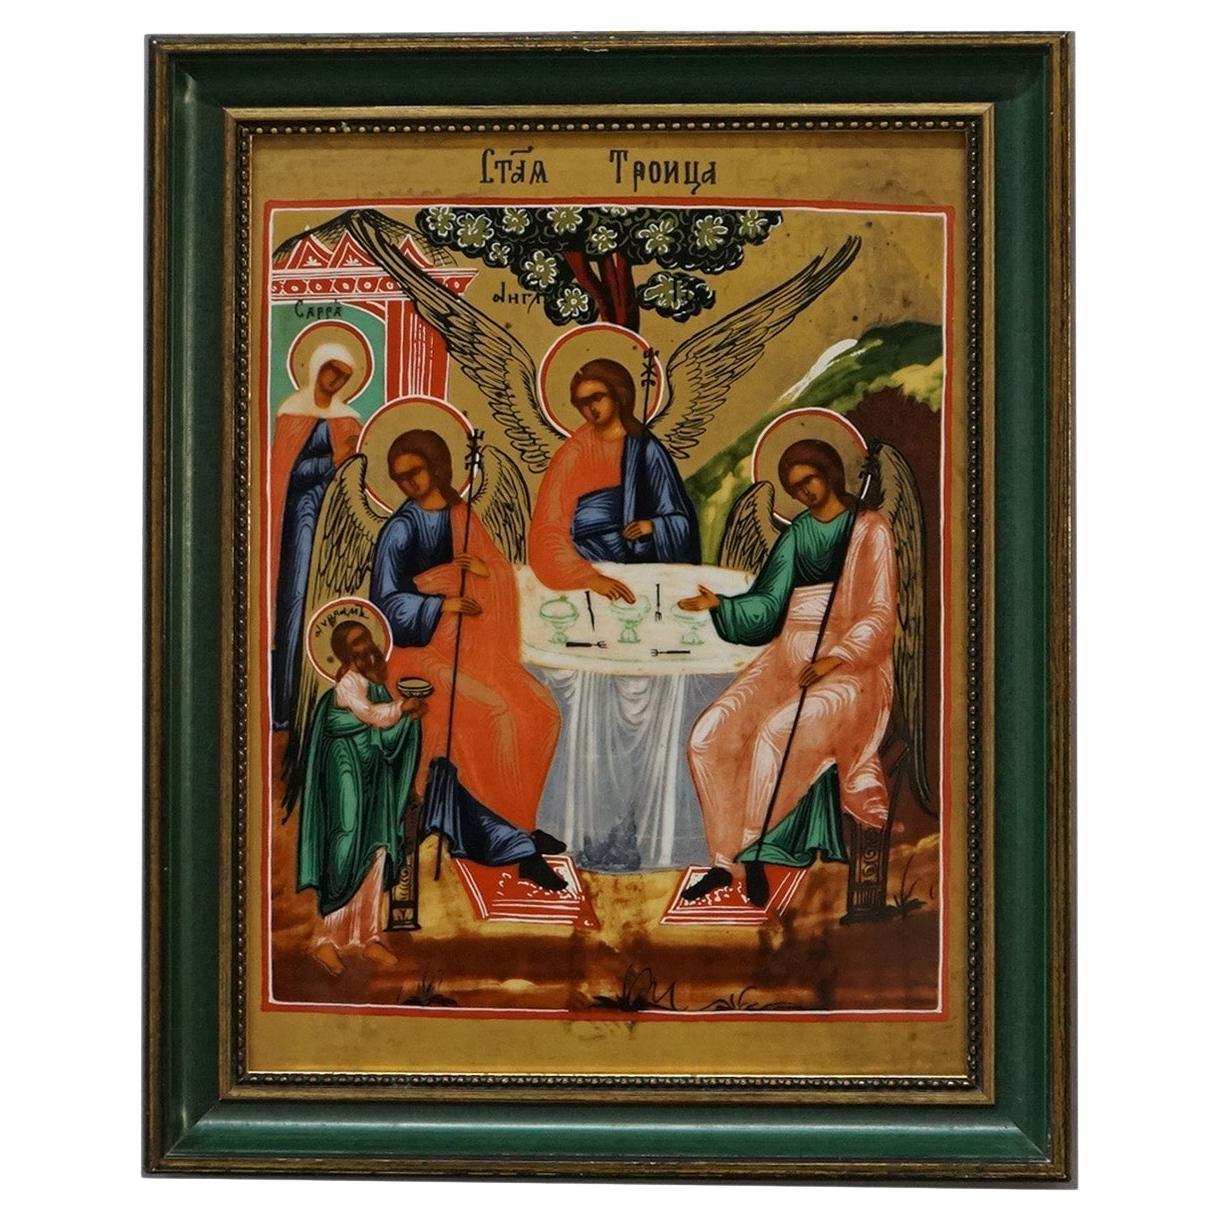 Heinrich Gerahmte religiöse Porzellanplakette, Heilige Dreifalti, 20. Jahrhundert